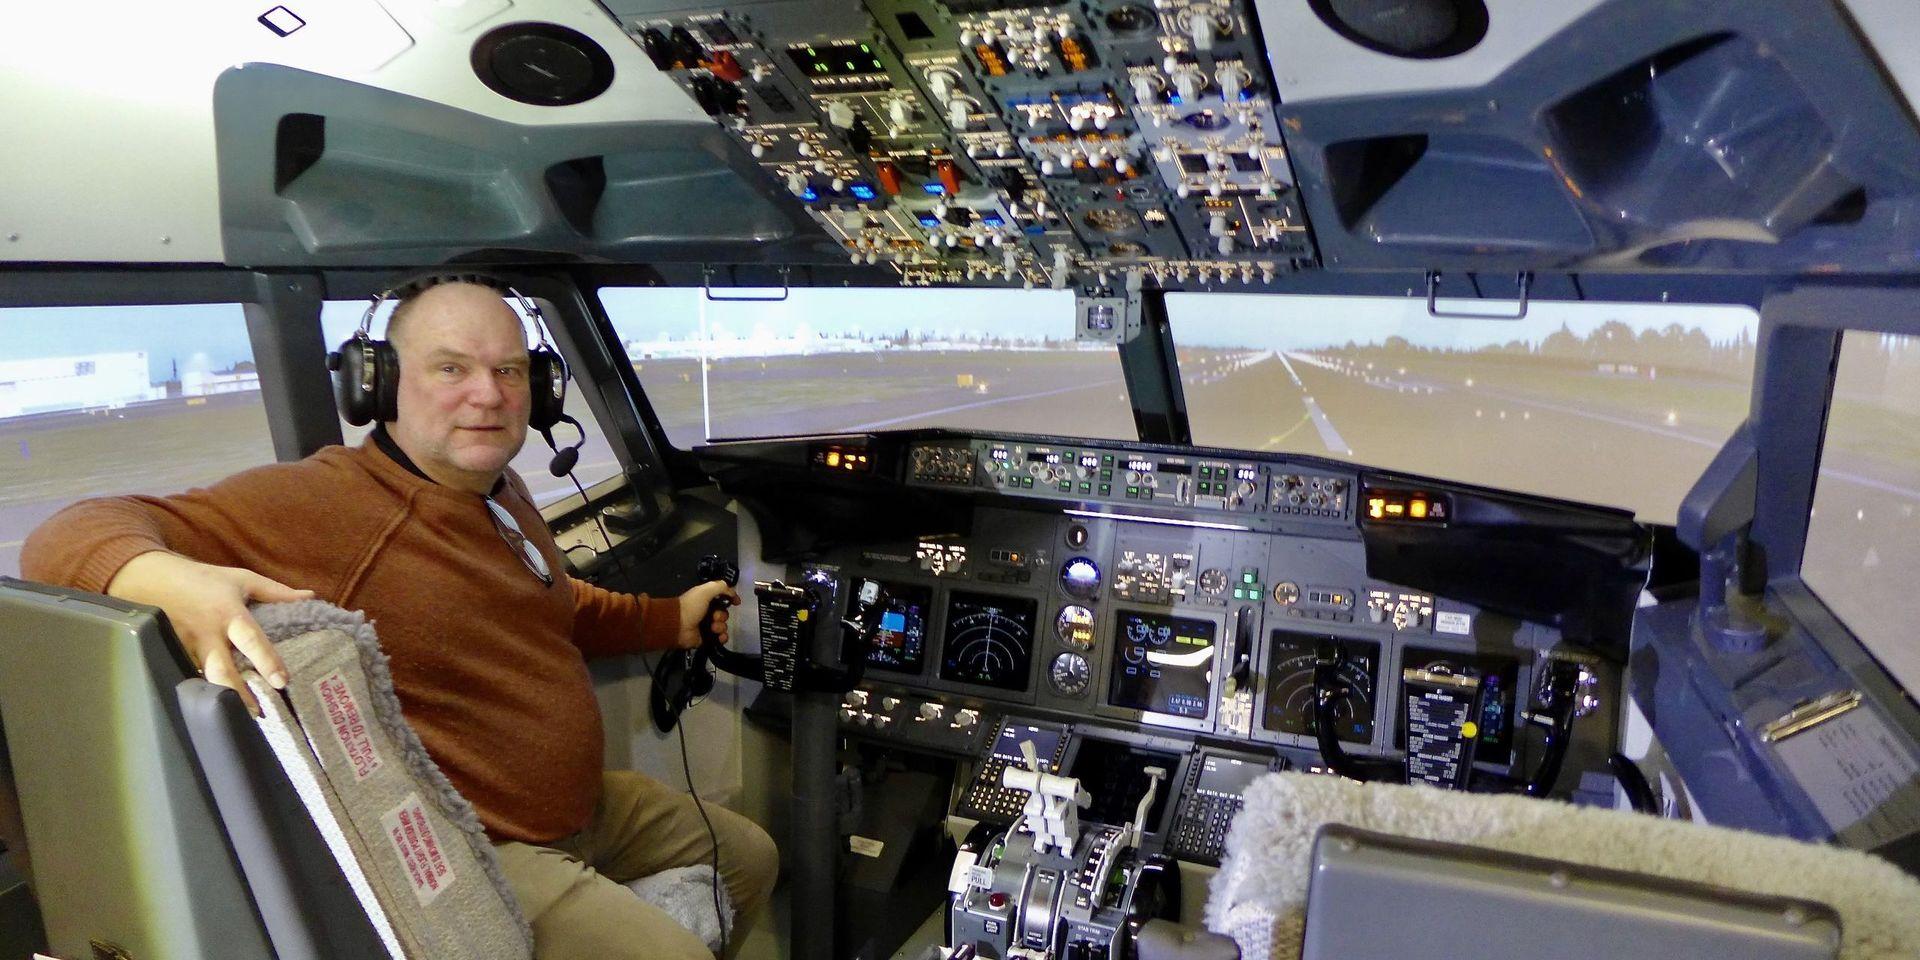 Flygentusiasten Jan Fjeld på plats i cockpiten på sin egen Boeing 737 800-simulator, som numera finns på Aeroseum i Säve, strax norr om Göteborg. &quot;Flygsimulatorn blir ytterligare en attraktion bland alla andra sevärdheter här&quot;, säger han.